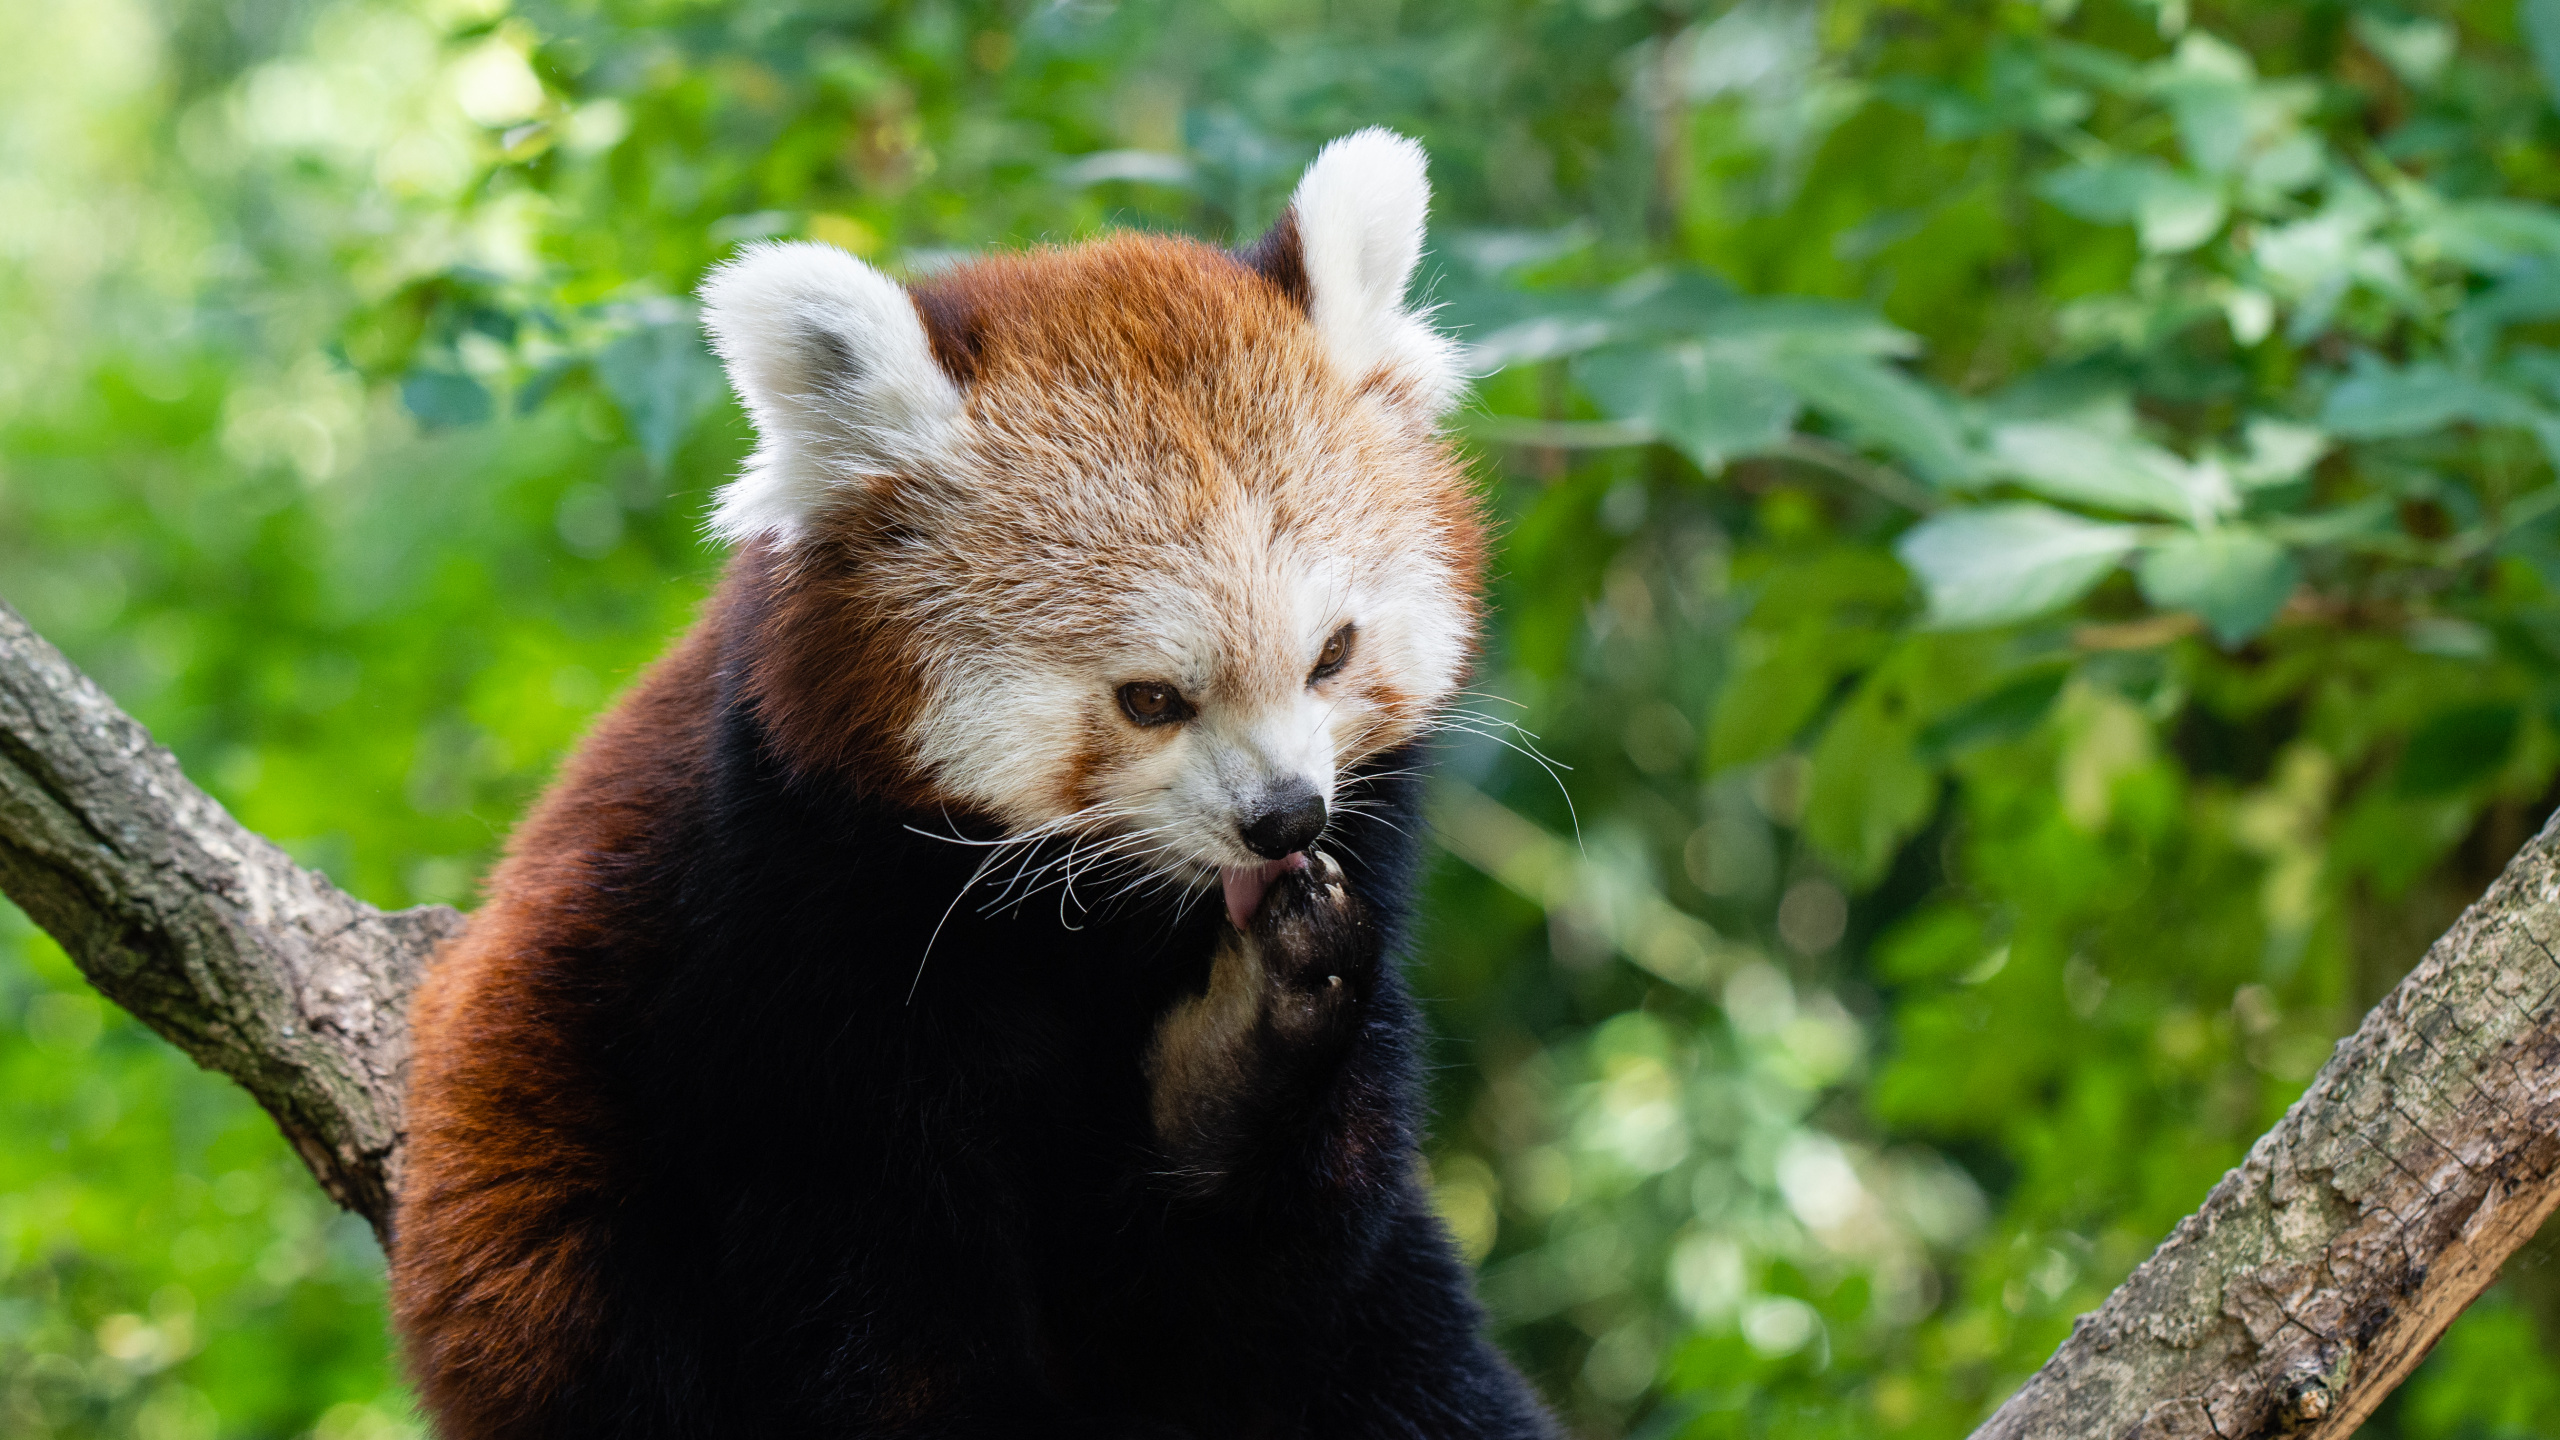 小熊猫, 大熊猫, 陆地动物, 野生动物, 自然保护区 壁纸 2560x1440 允许